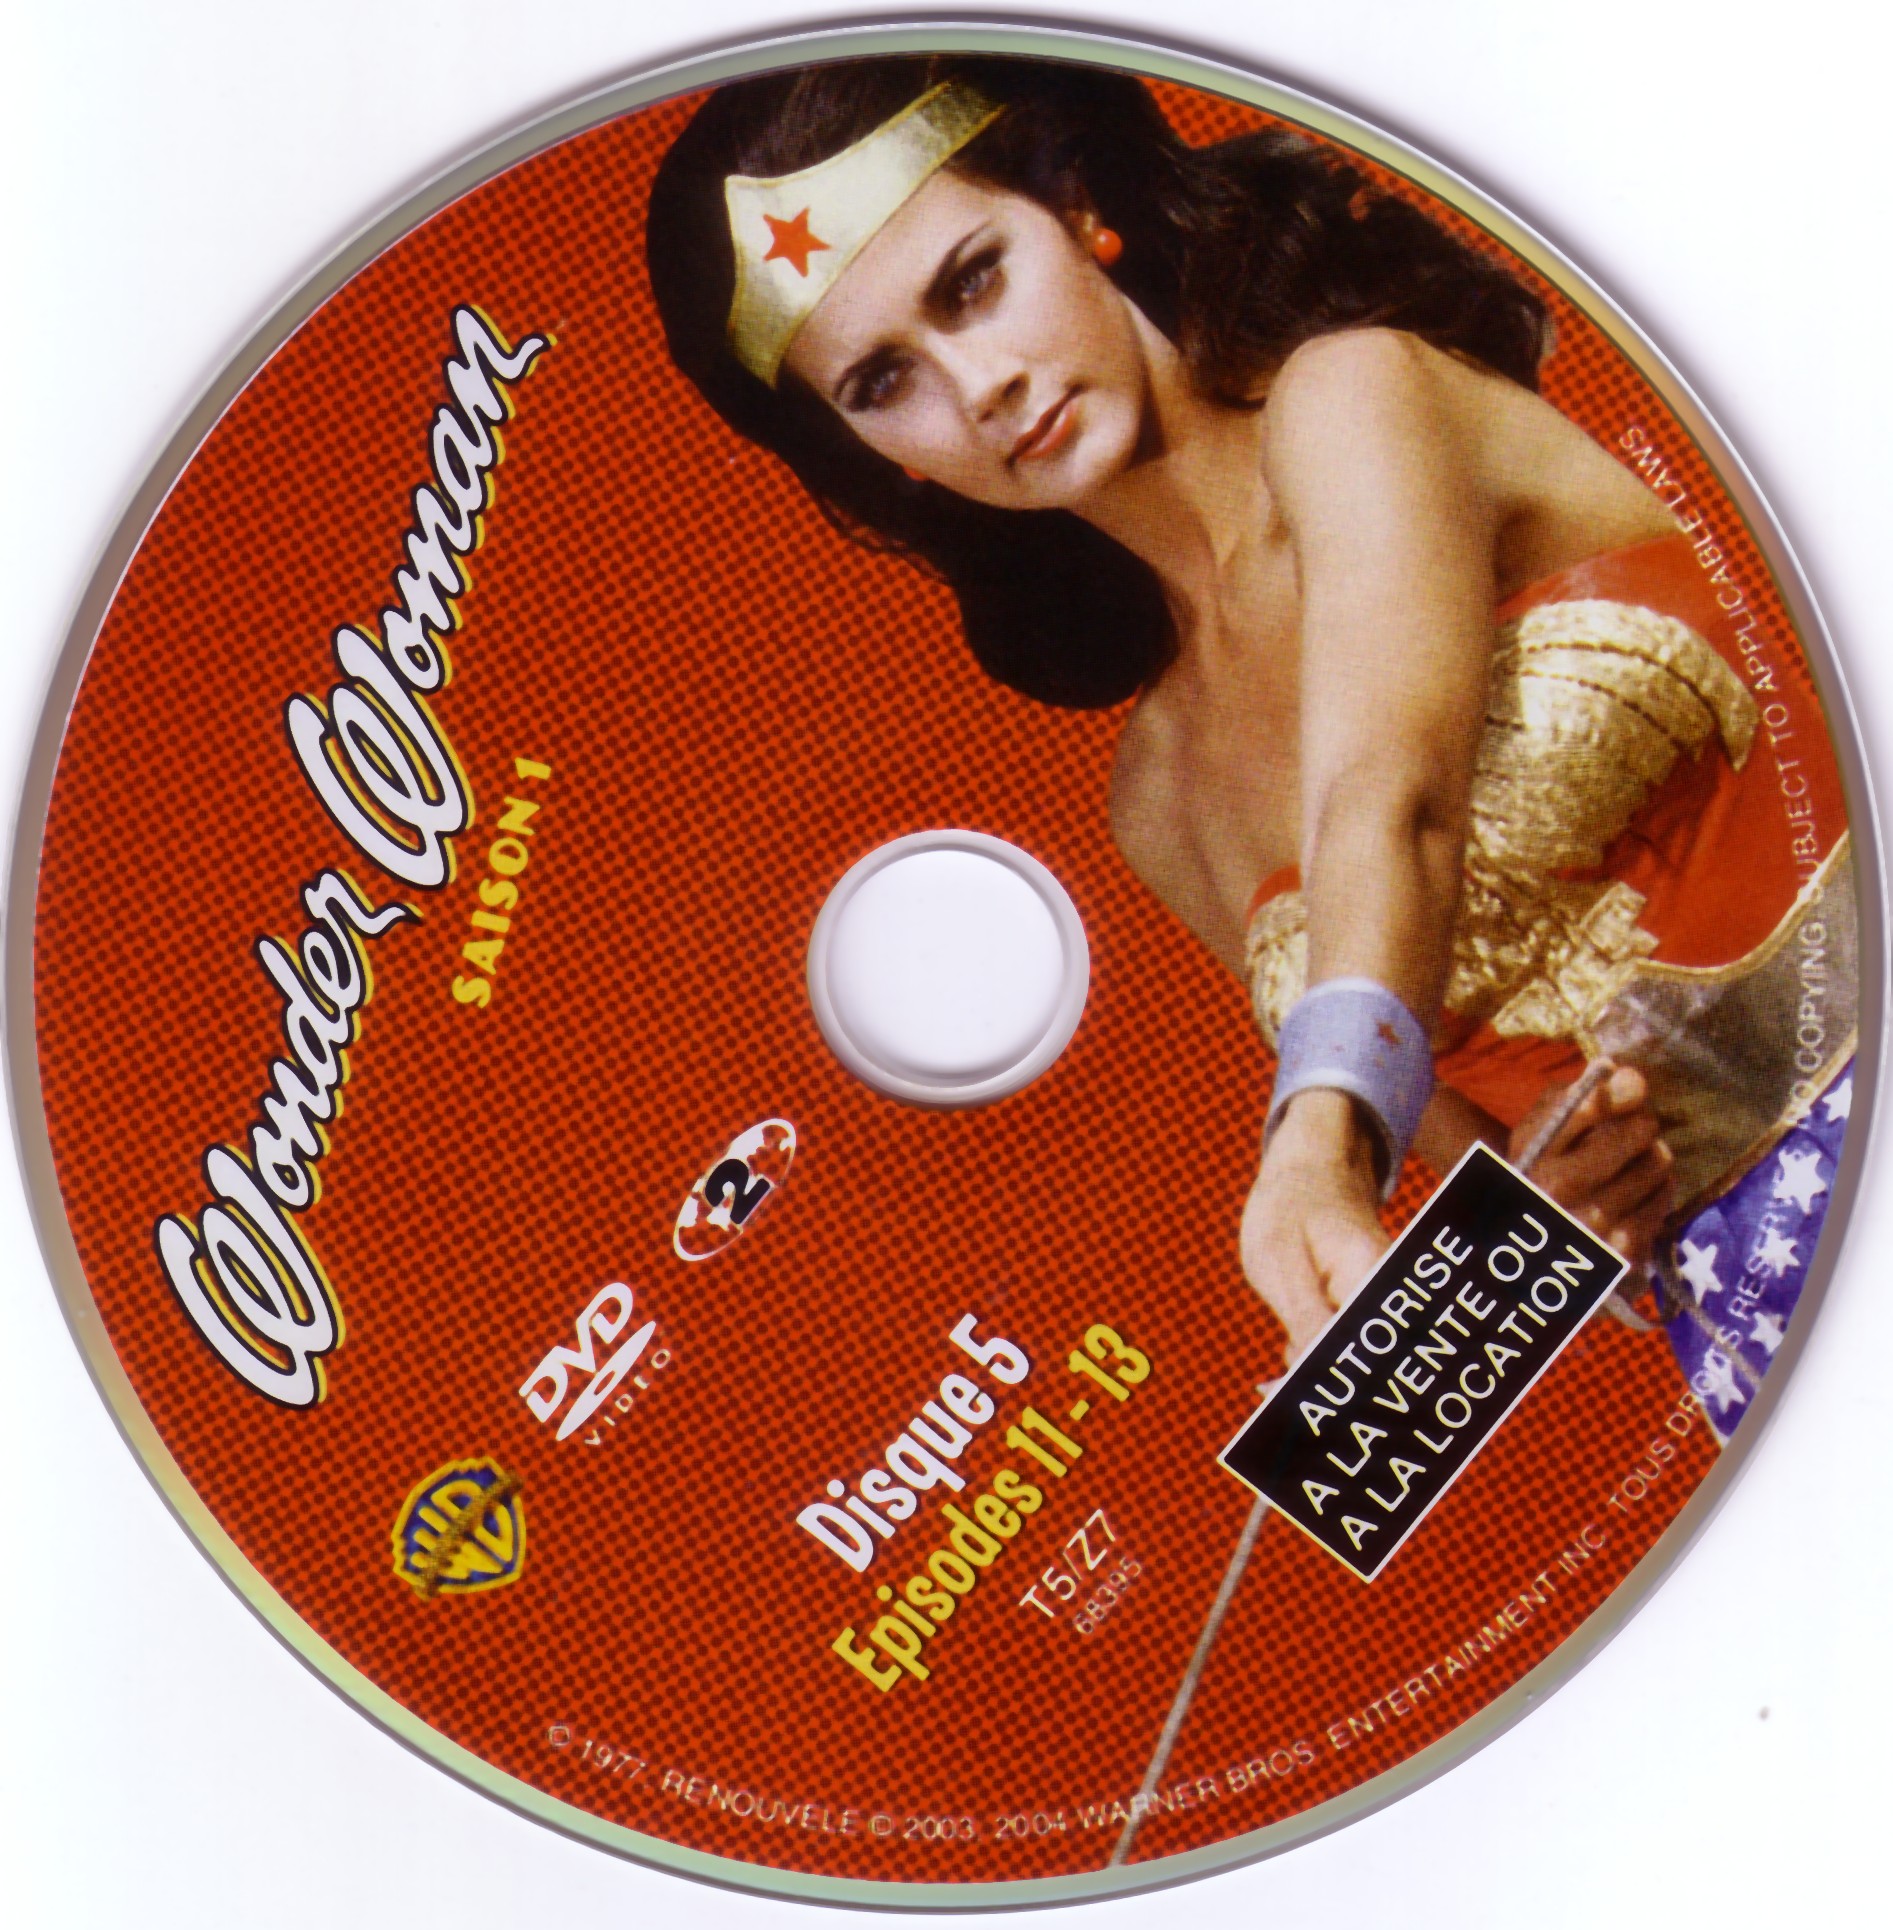 Wonder Woman saison 1 DVD 5